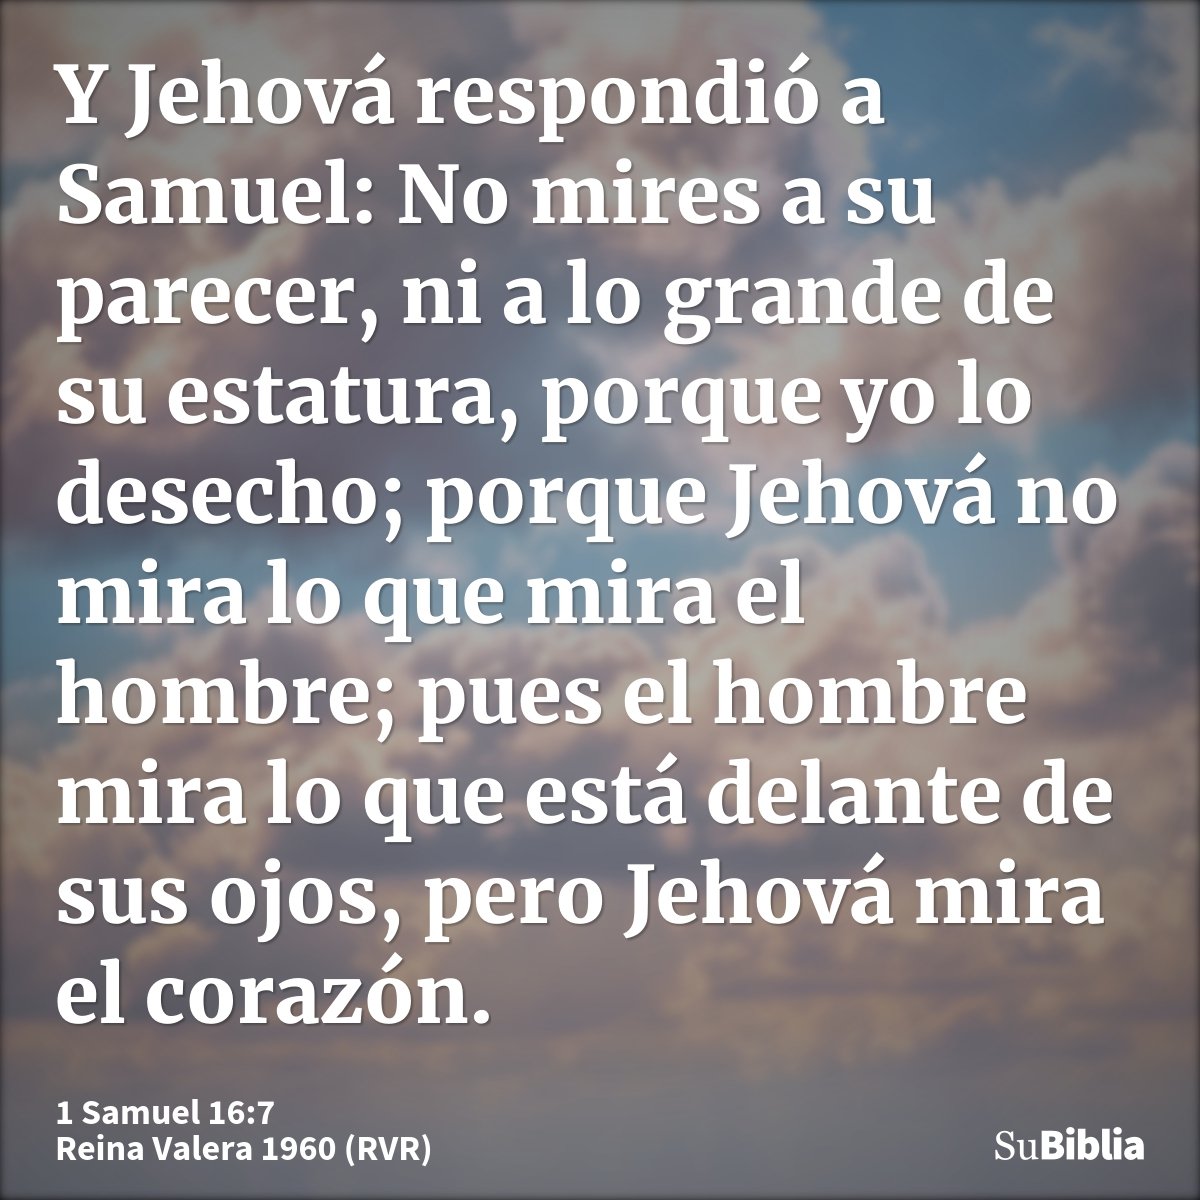 Y Jehová respondió a Samuel: No mires a su parecer, ni a lo grande de su estatura, porque yo lo desecho; porque Jehová no mira lo que mira el hombre; pues el ho...